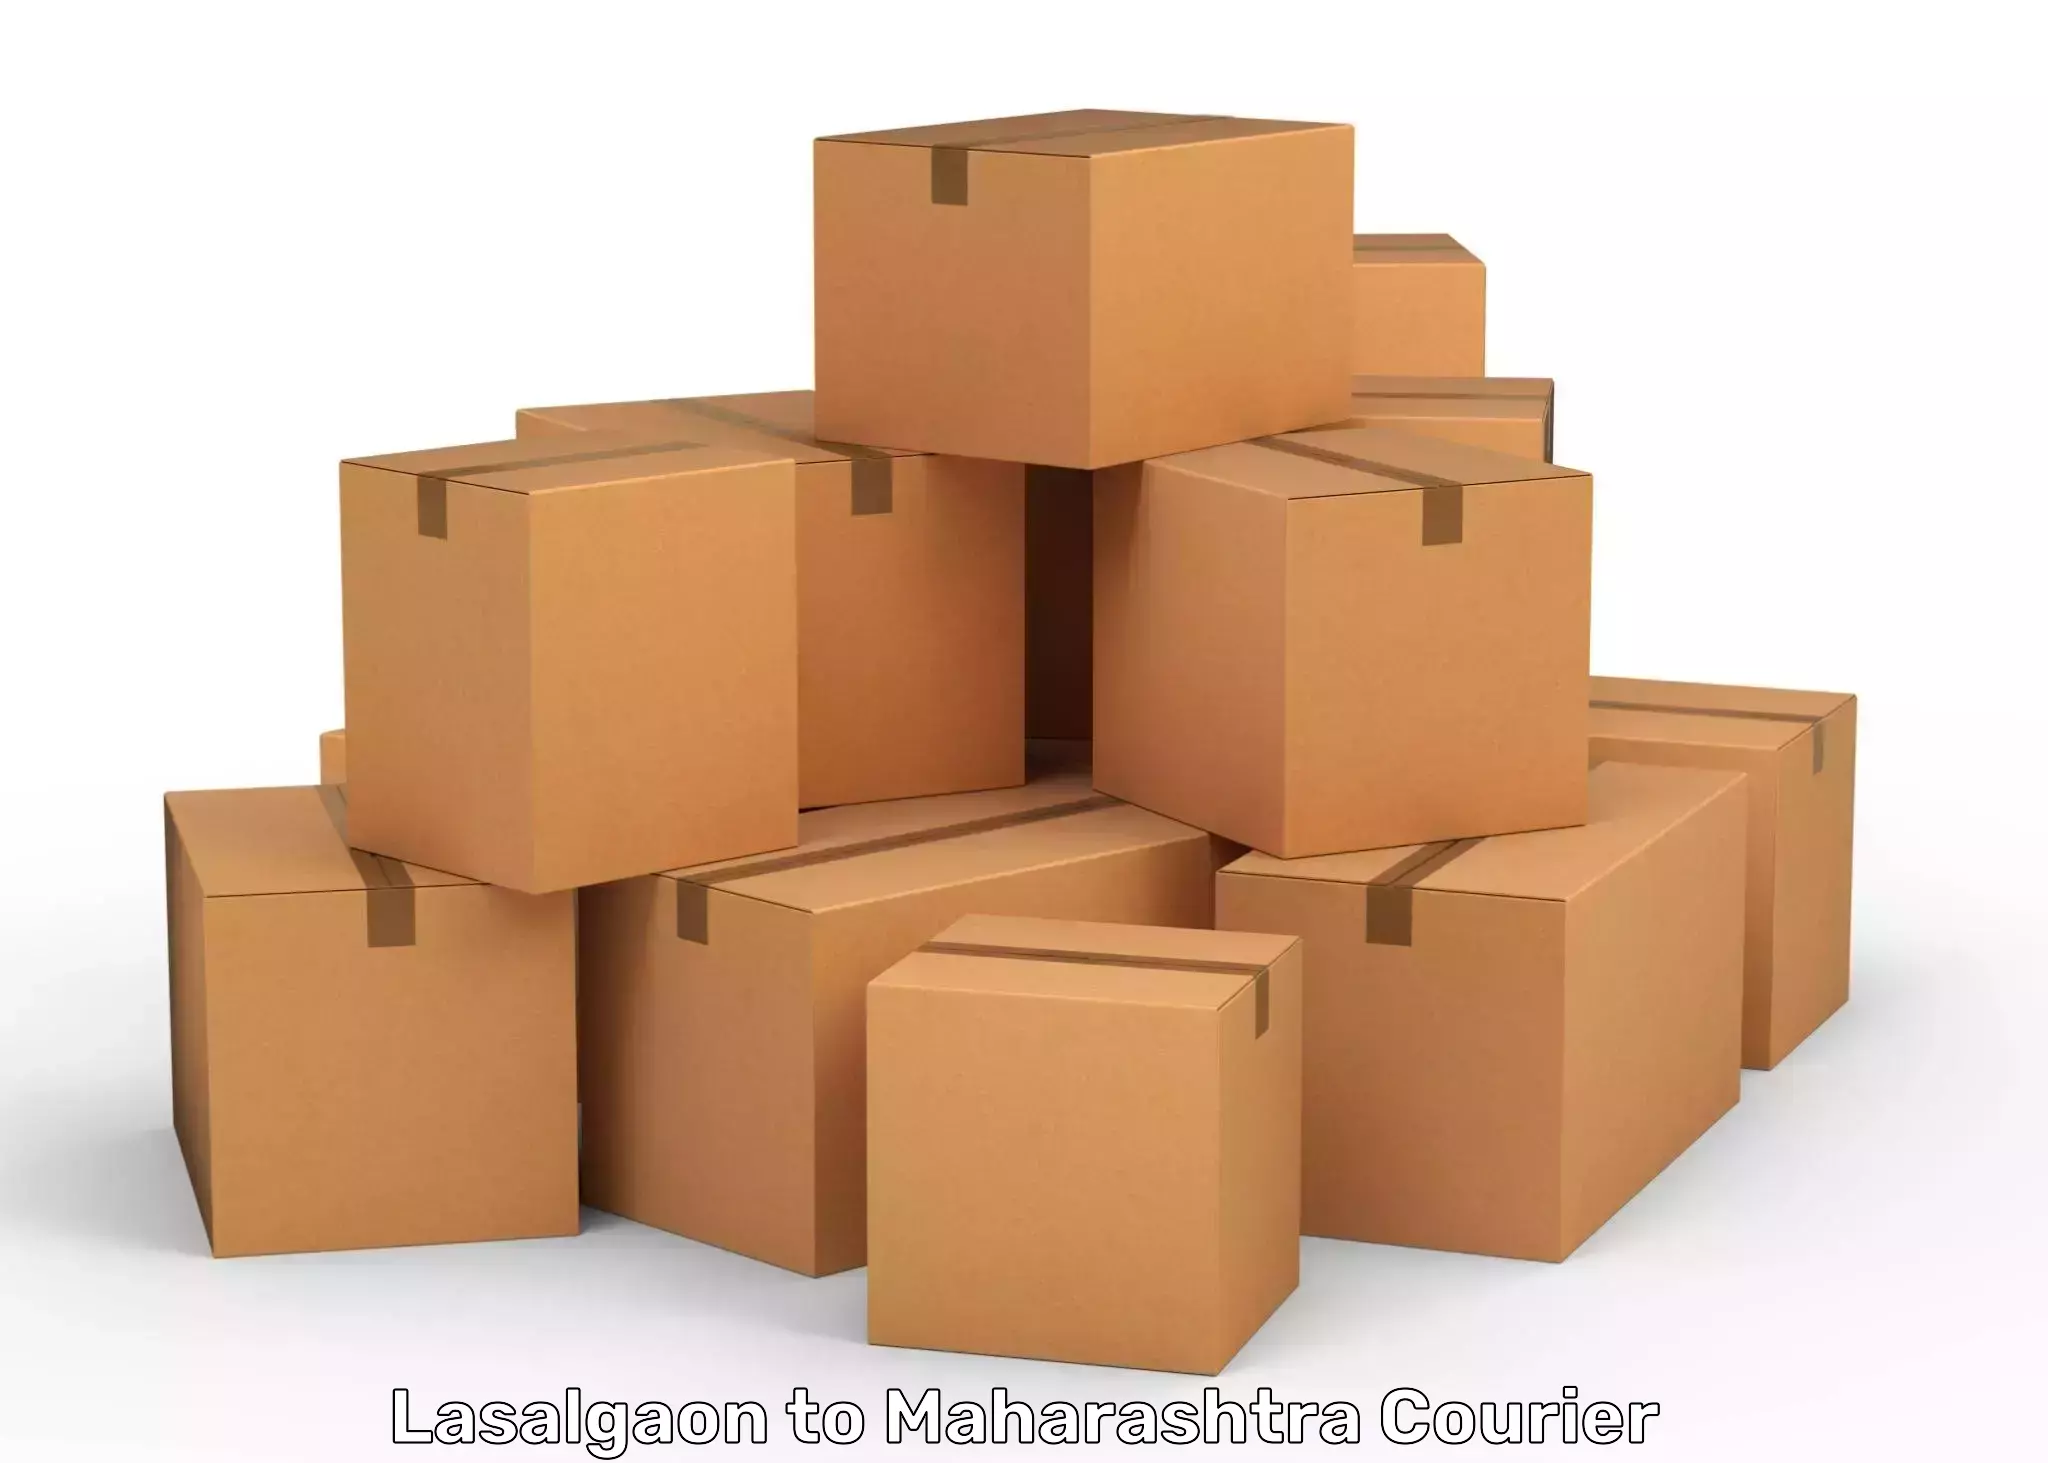 Large package courier Lasalgaon to Maharashtra